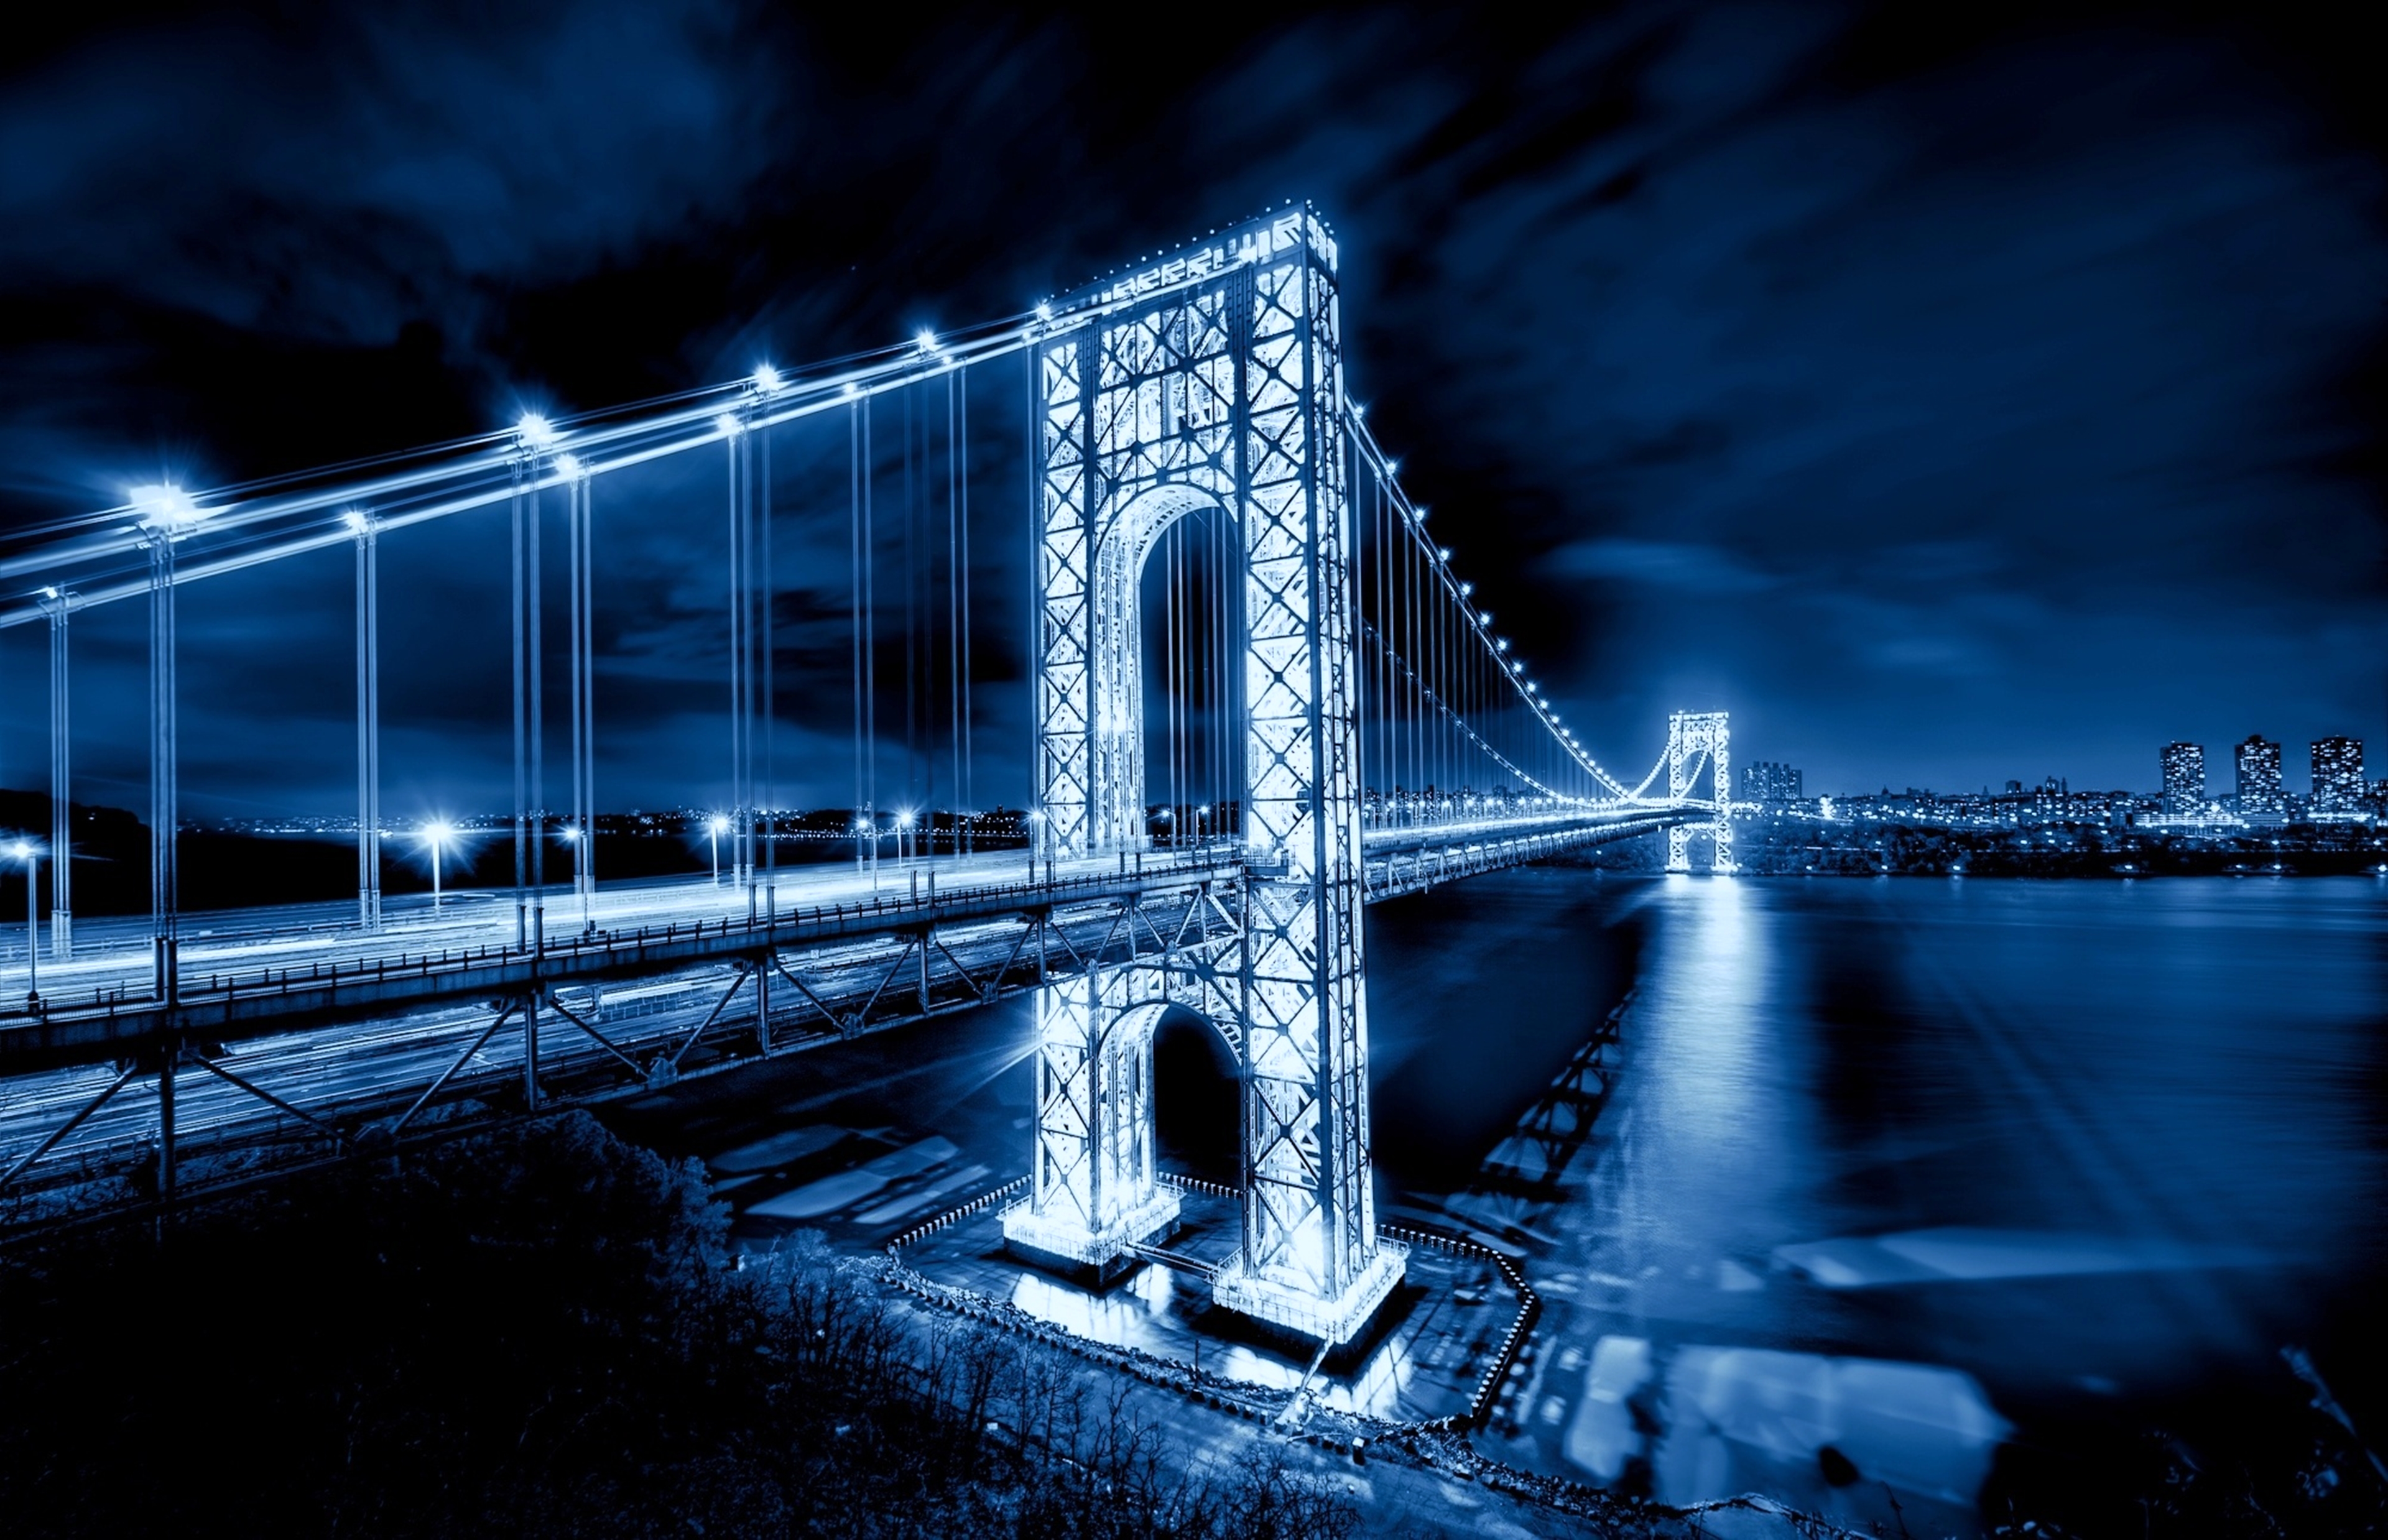 Kompyuter uchun rasmlar. Мост Джорджа Вашингтона Манхэттен. Мост Нью джерси. Бруклинский мост Нью-Йорк. Мост Трайборо Нью-Йорк.